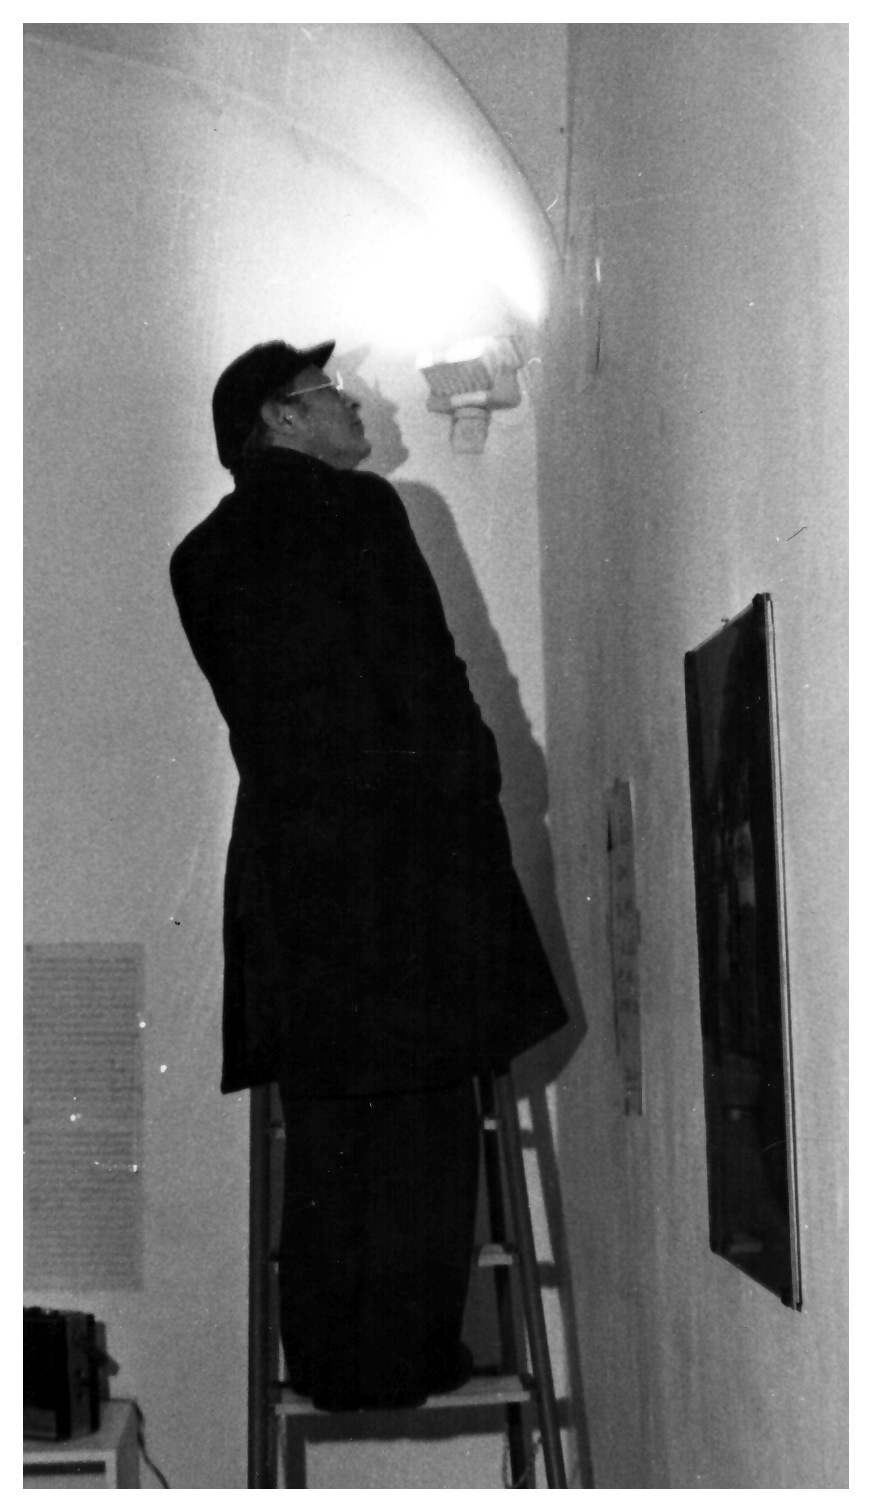 L'immagine mostra Filiberto Menna intento a completare la preparazione della sua mostra alla Galleria Lastaria di Roma. L'uomo, vestito in giacca e pantaloni neri e in piedi su una scala a pioli, intento ad osservare da vicino la luce di un faretto